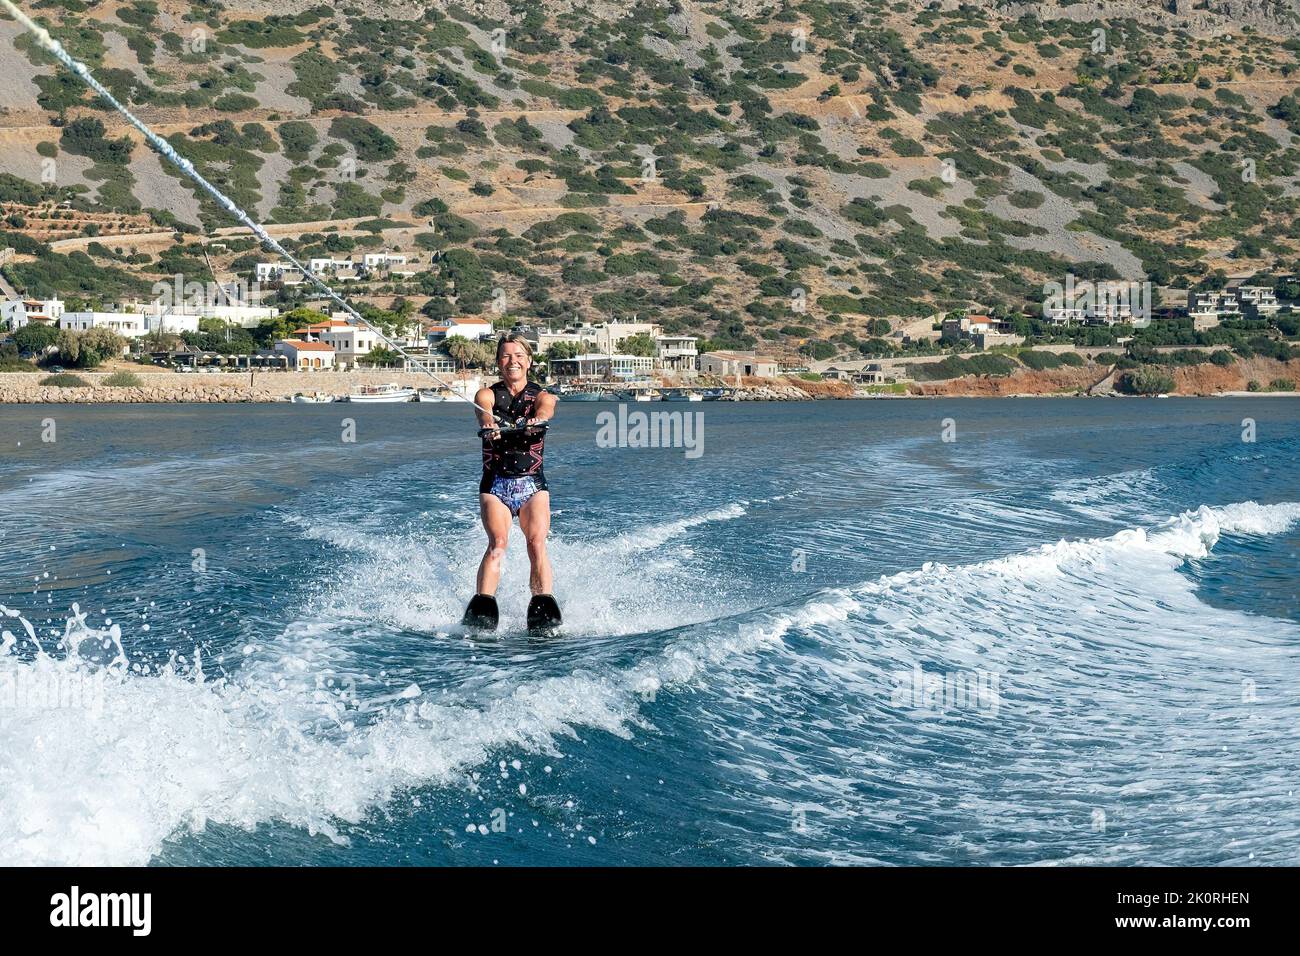 Vacances de ski nautique à Elounda Bay, Crète. Une baie pittoresque naturellement abritée qui offre un emplacement idéal pour le ski nautique. Banque D'Images